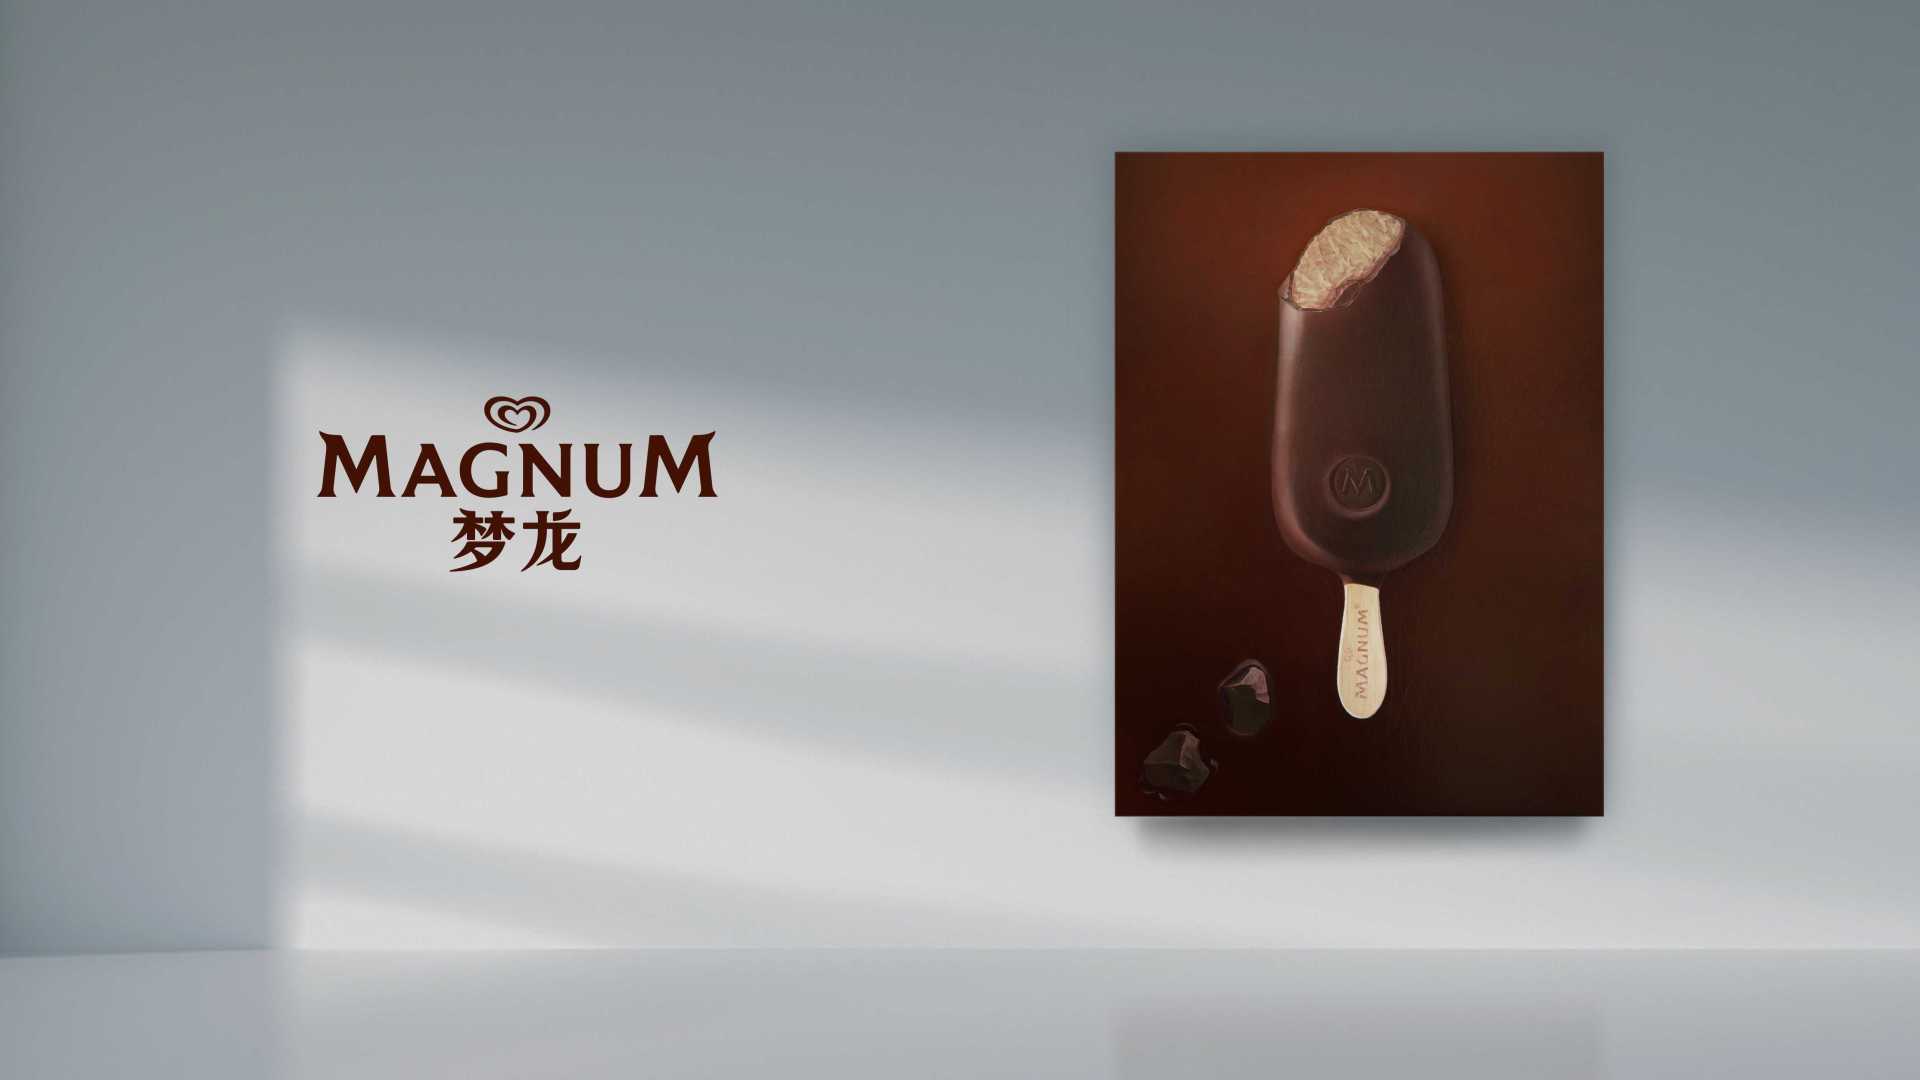 央视网 X 梦龙 把冰淇淋的美味画出来，是怎样一种奇妙体验？